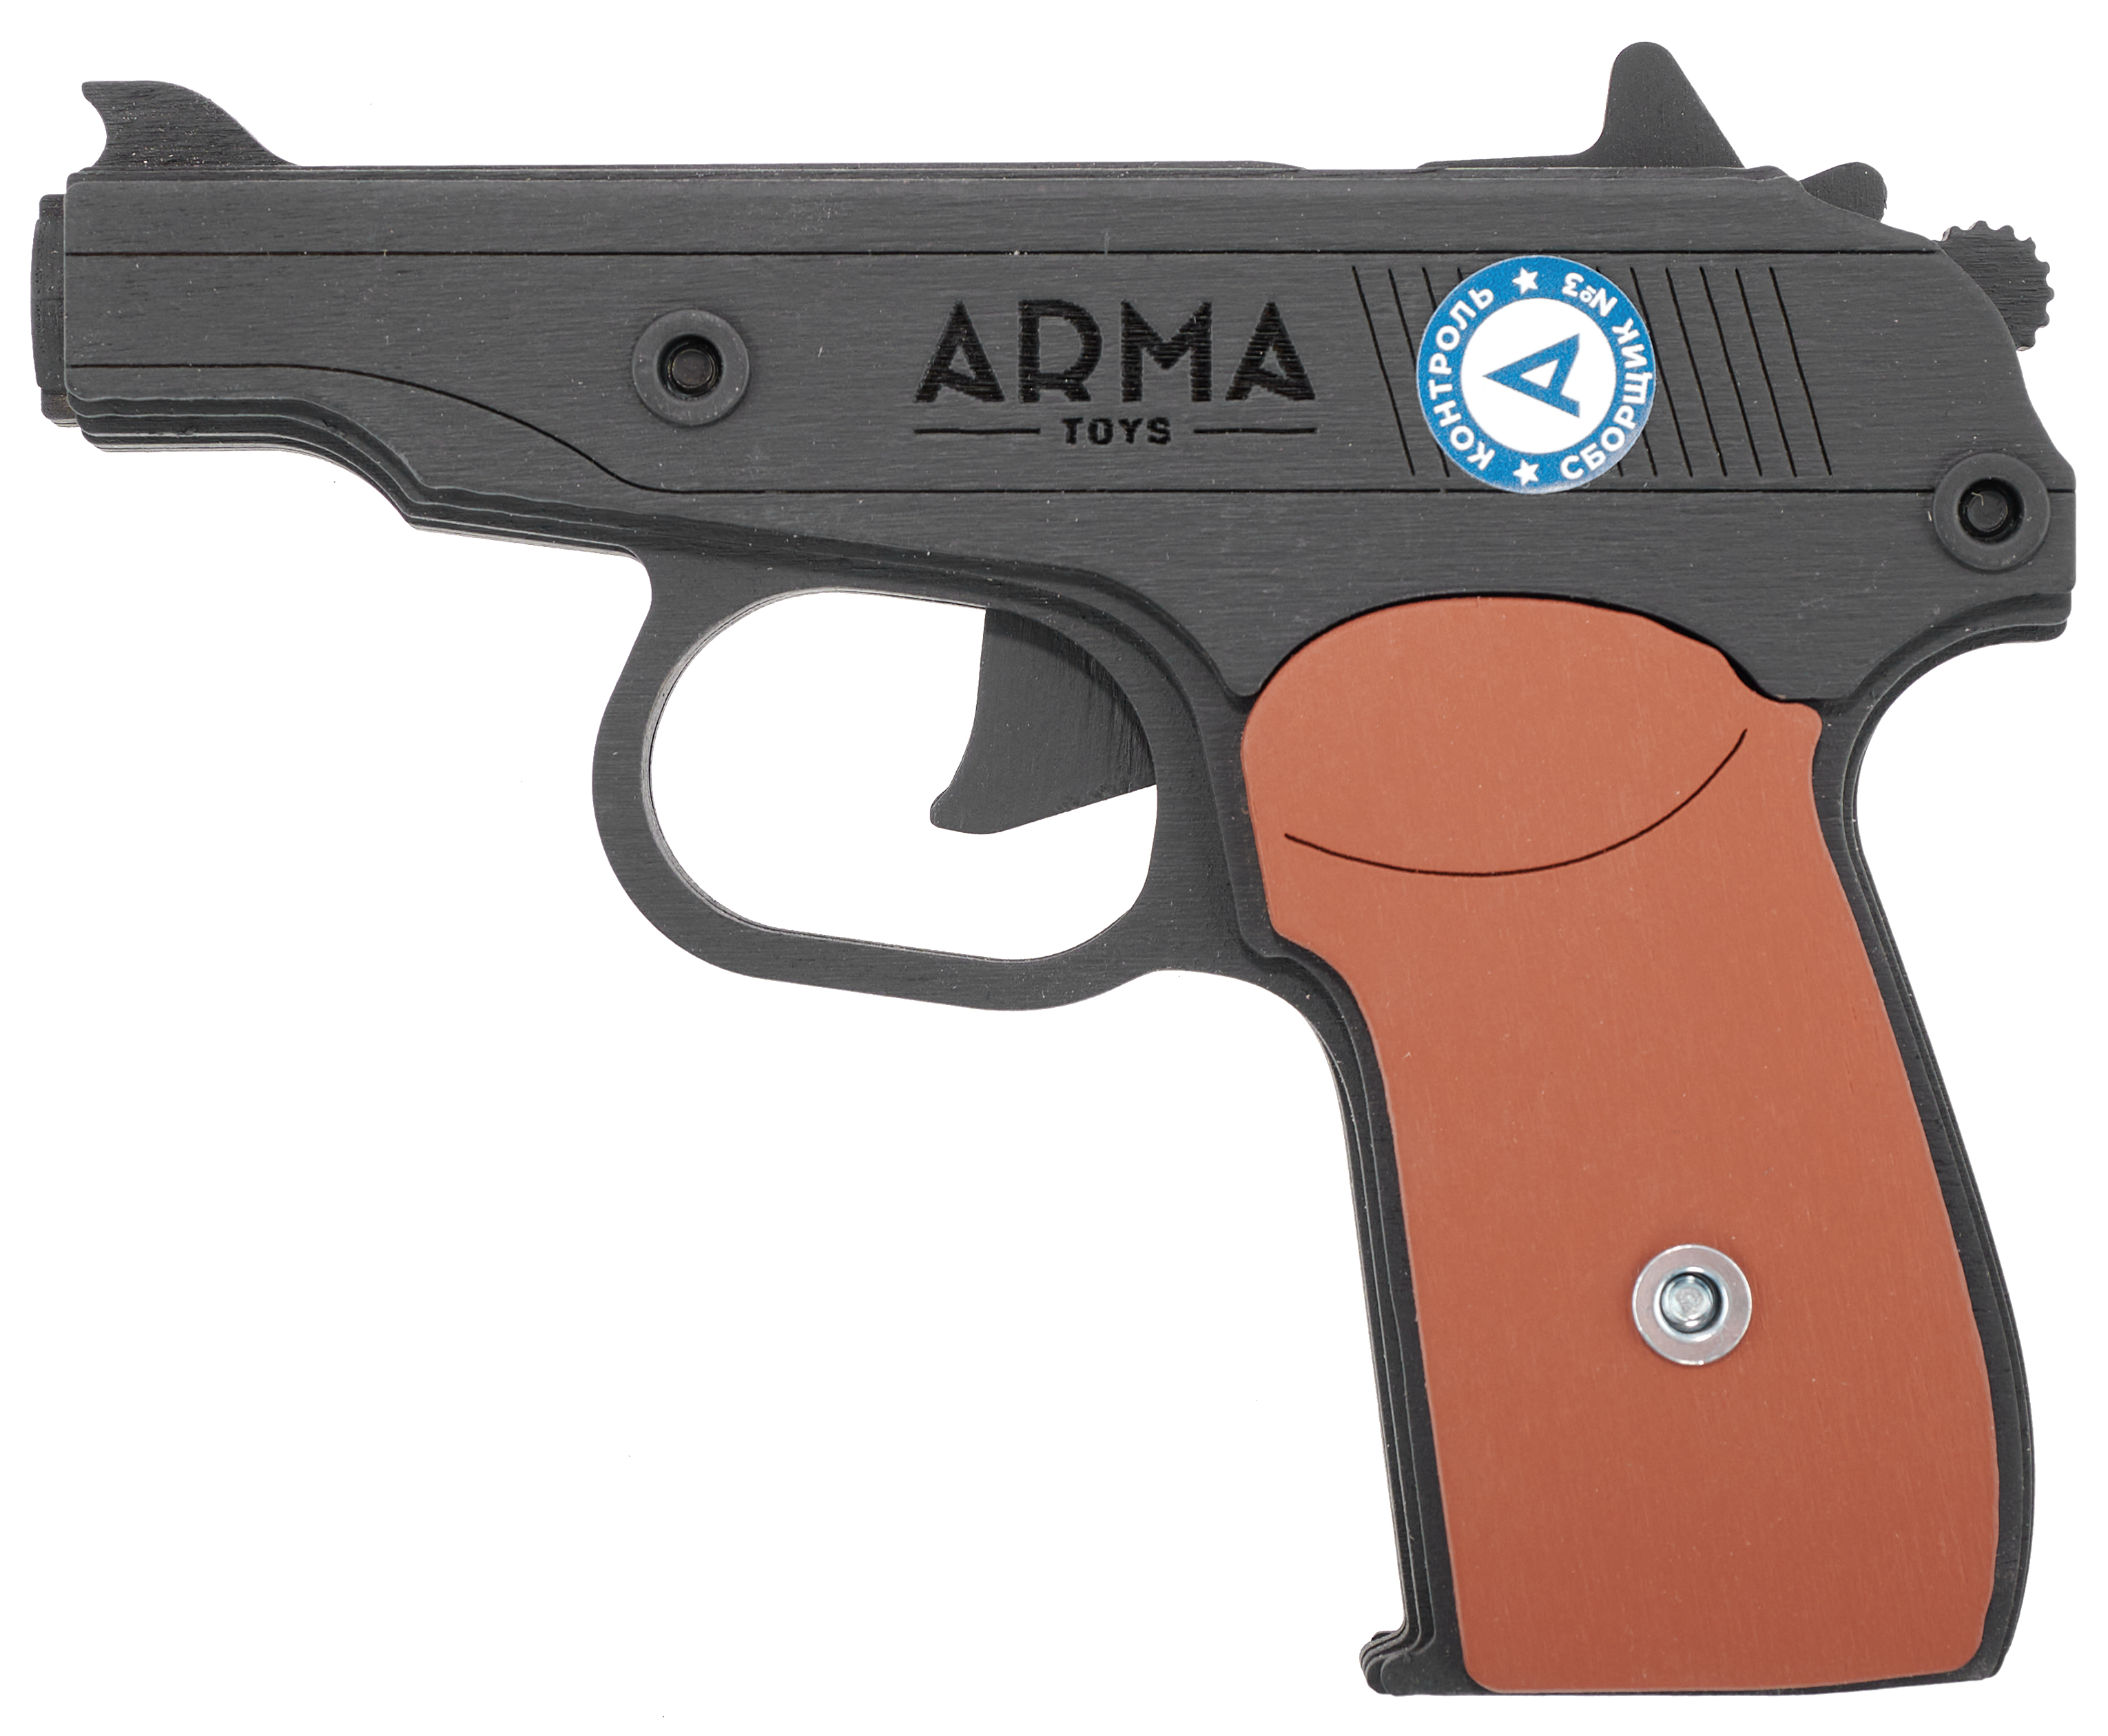 Резинкострел игрушечный Arma toys пистолет Макарова макет, ПМ, окрашенный, AT012K резинкострел arma toys автомат ак 12 макет калашников at039